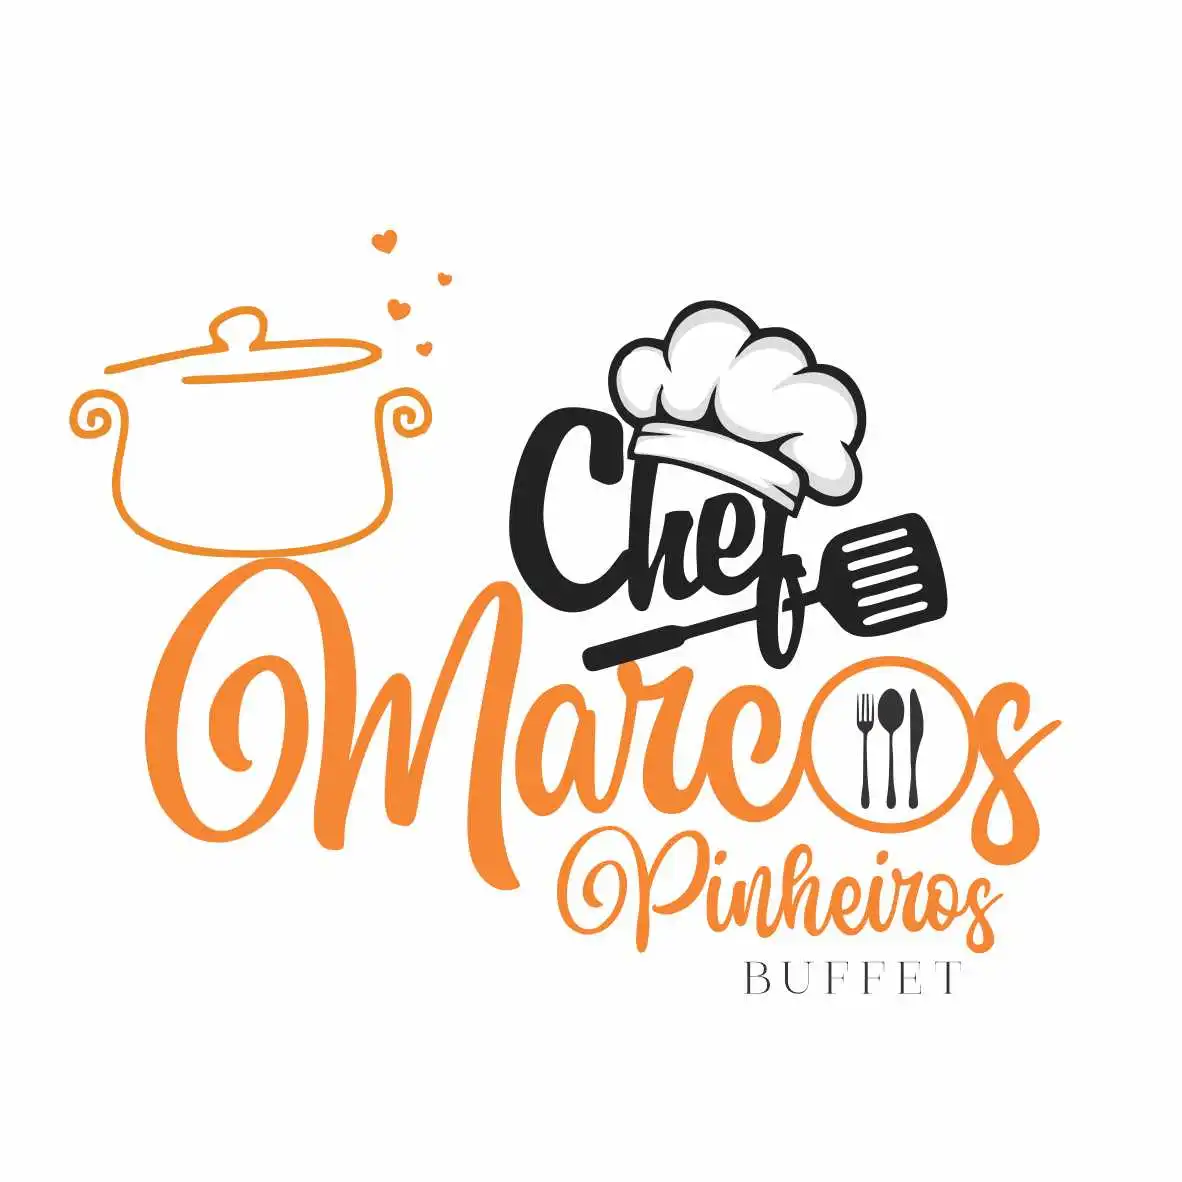 
Logotipo Logomarca Chef Buffet de Eventos



